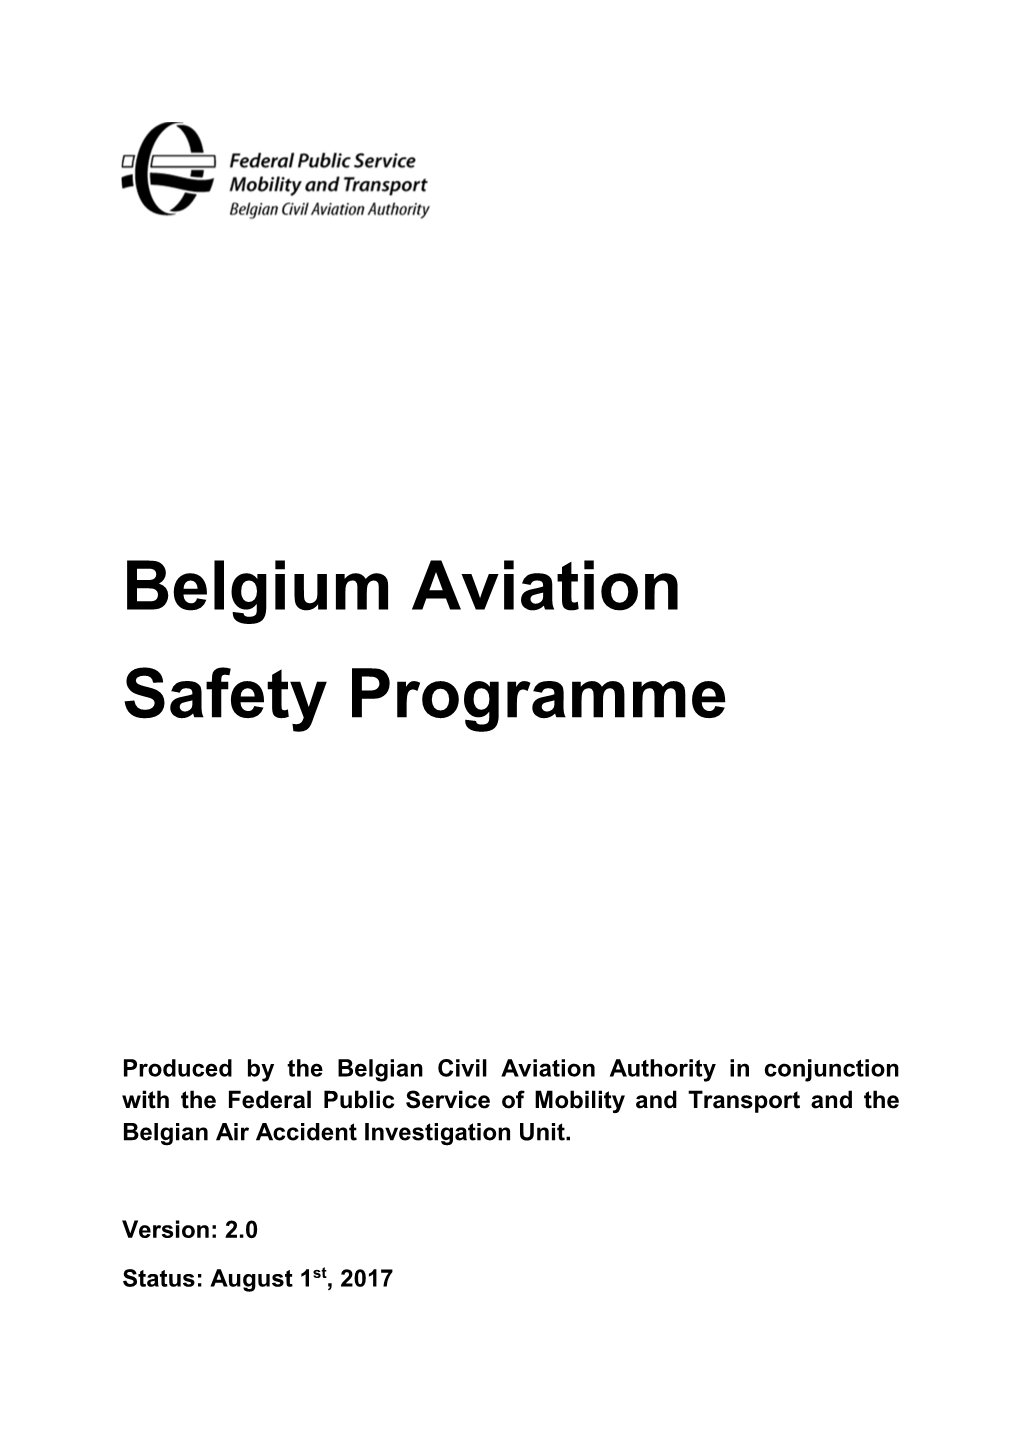 Belgium Aviation Safety Programme V2